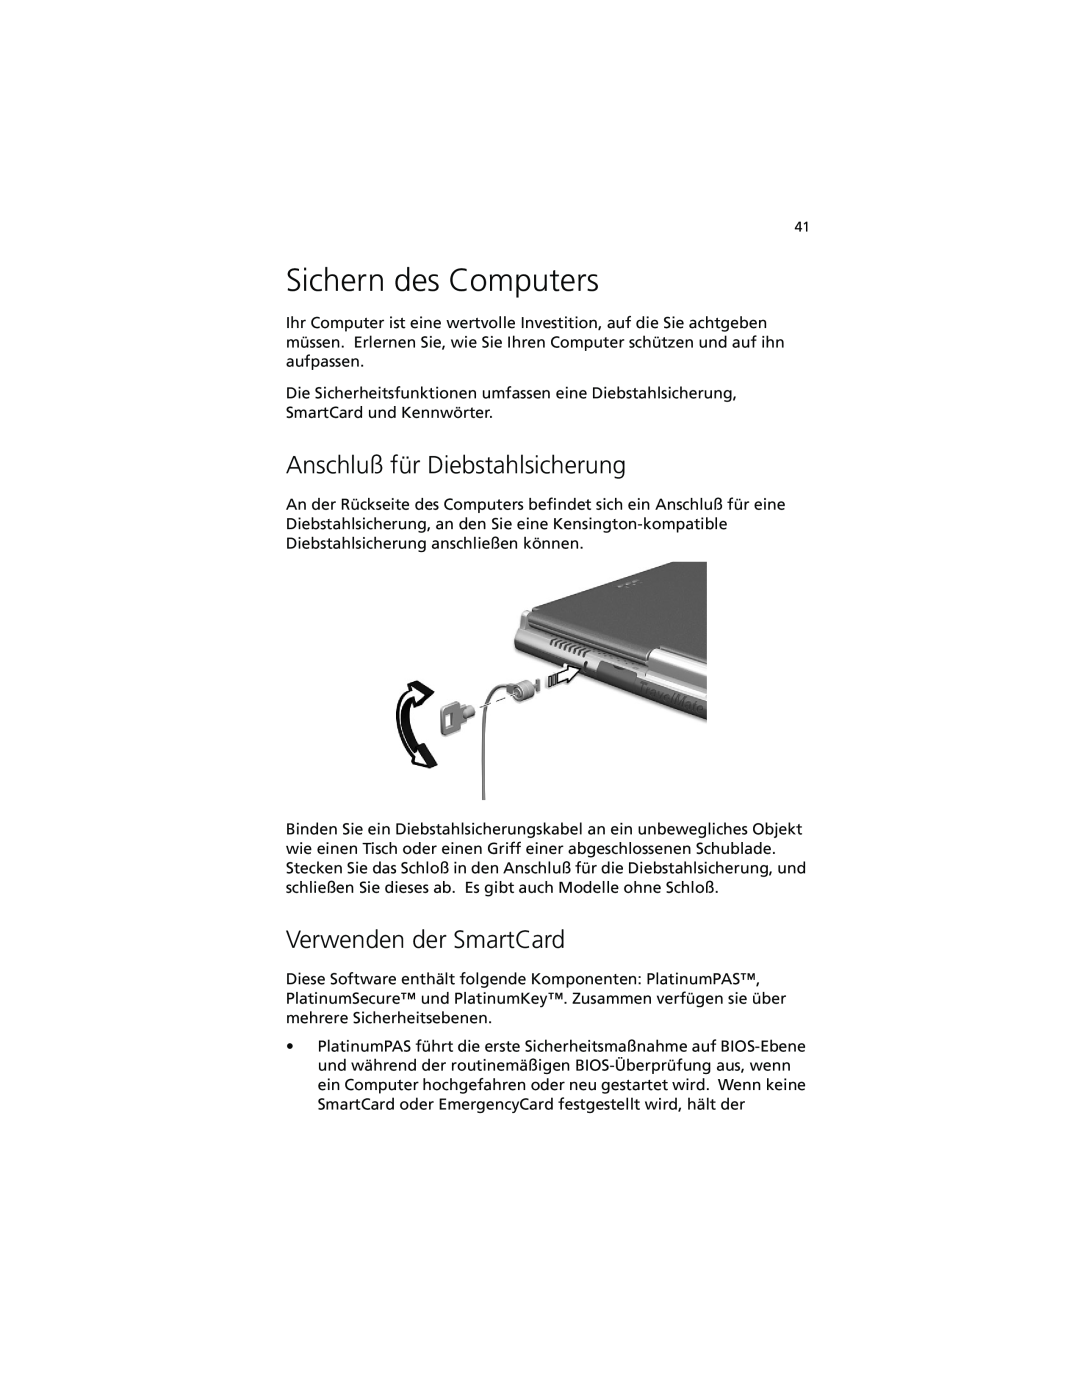 Acer C100-Series manual Sichern des Computers, Anschluß für Diebstahlsicherung, Verwenden der SmartCard 